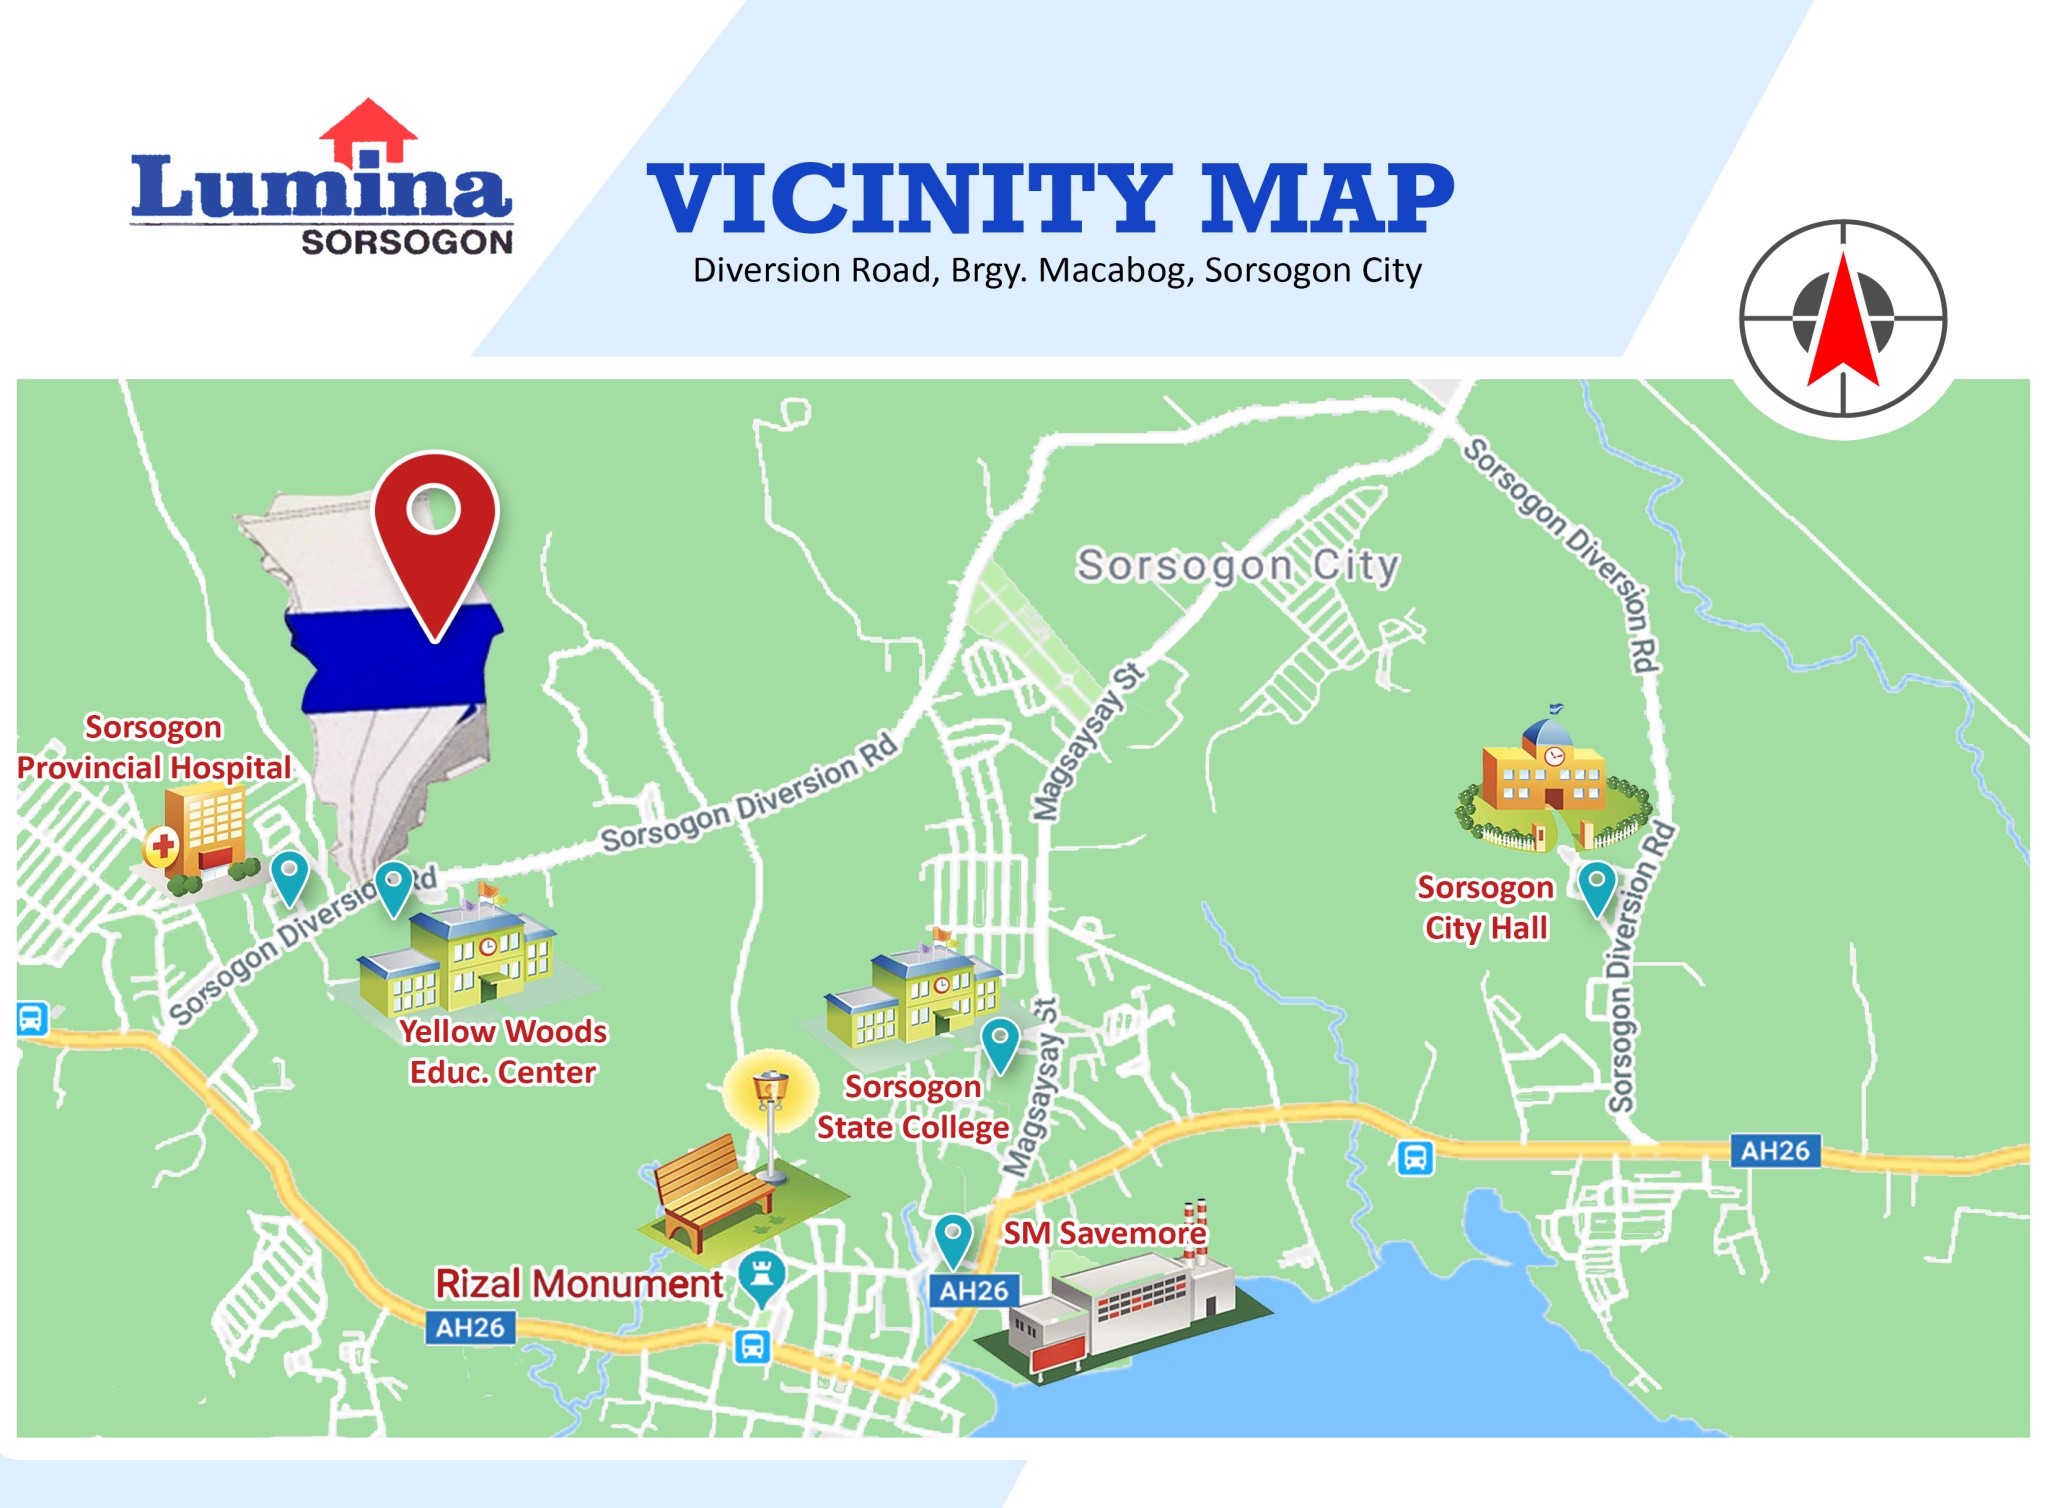 Vicinity-Map-1636004130.jpeg